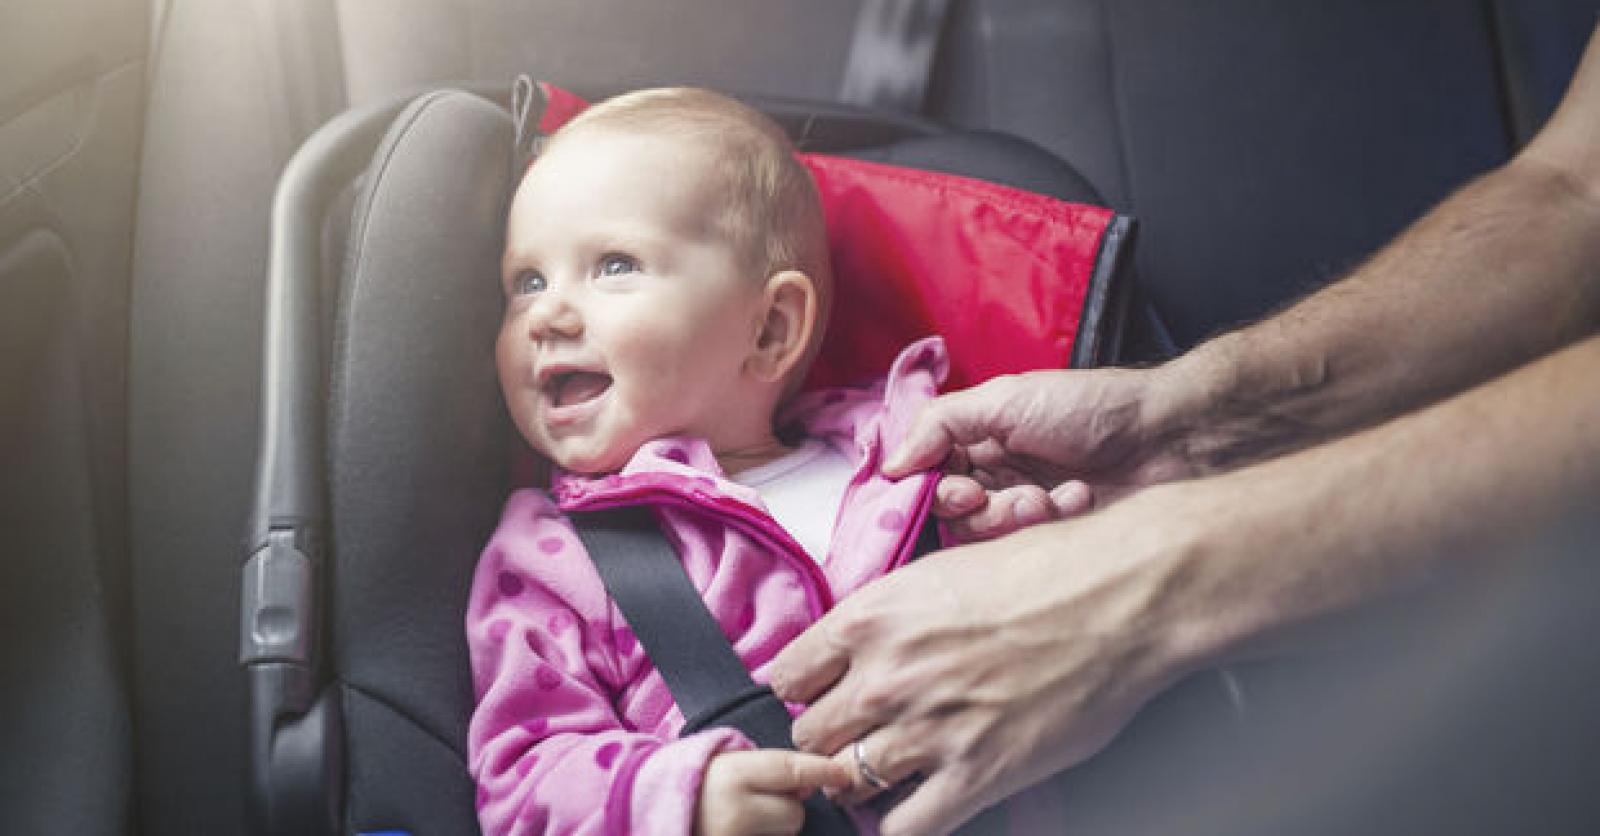 Près d'un Wallon sur 5 n'utilise pas de siège adapté pour transporter un  enfant en voiture